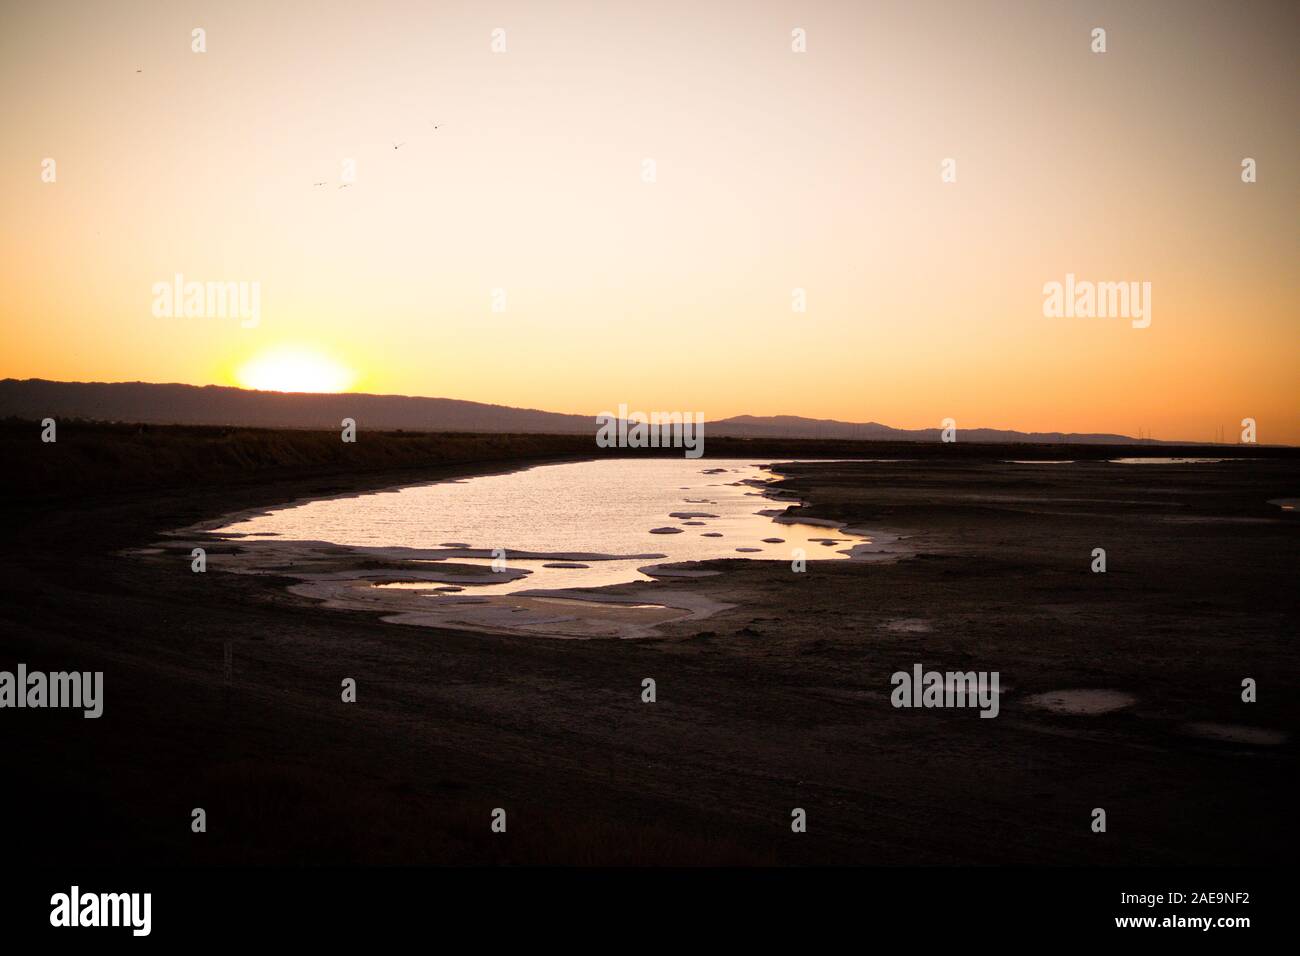 Soleil derrière la montagne, avec le marais de marée / salt pan sur le bord de la baie de San Francisco au premier plan. Ciel orange, noir. Banque D'Images